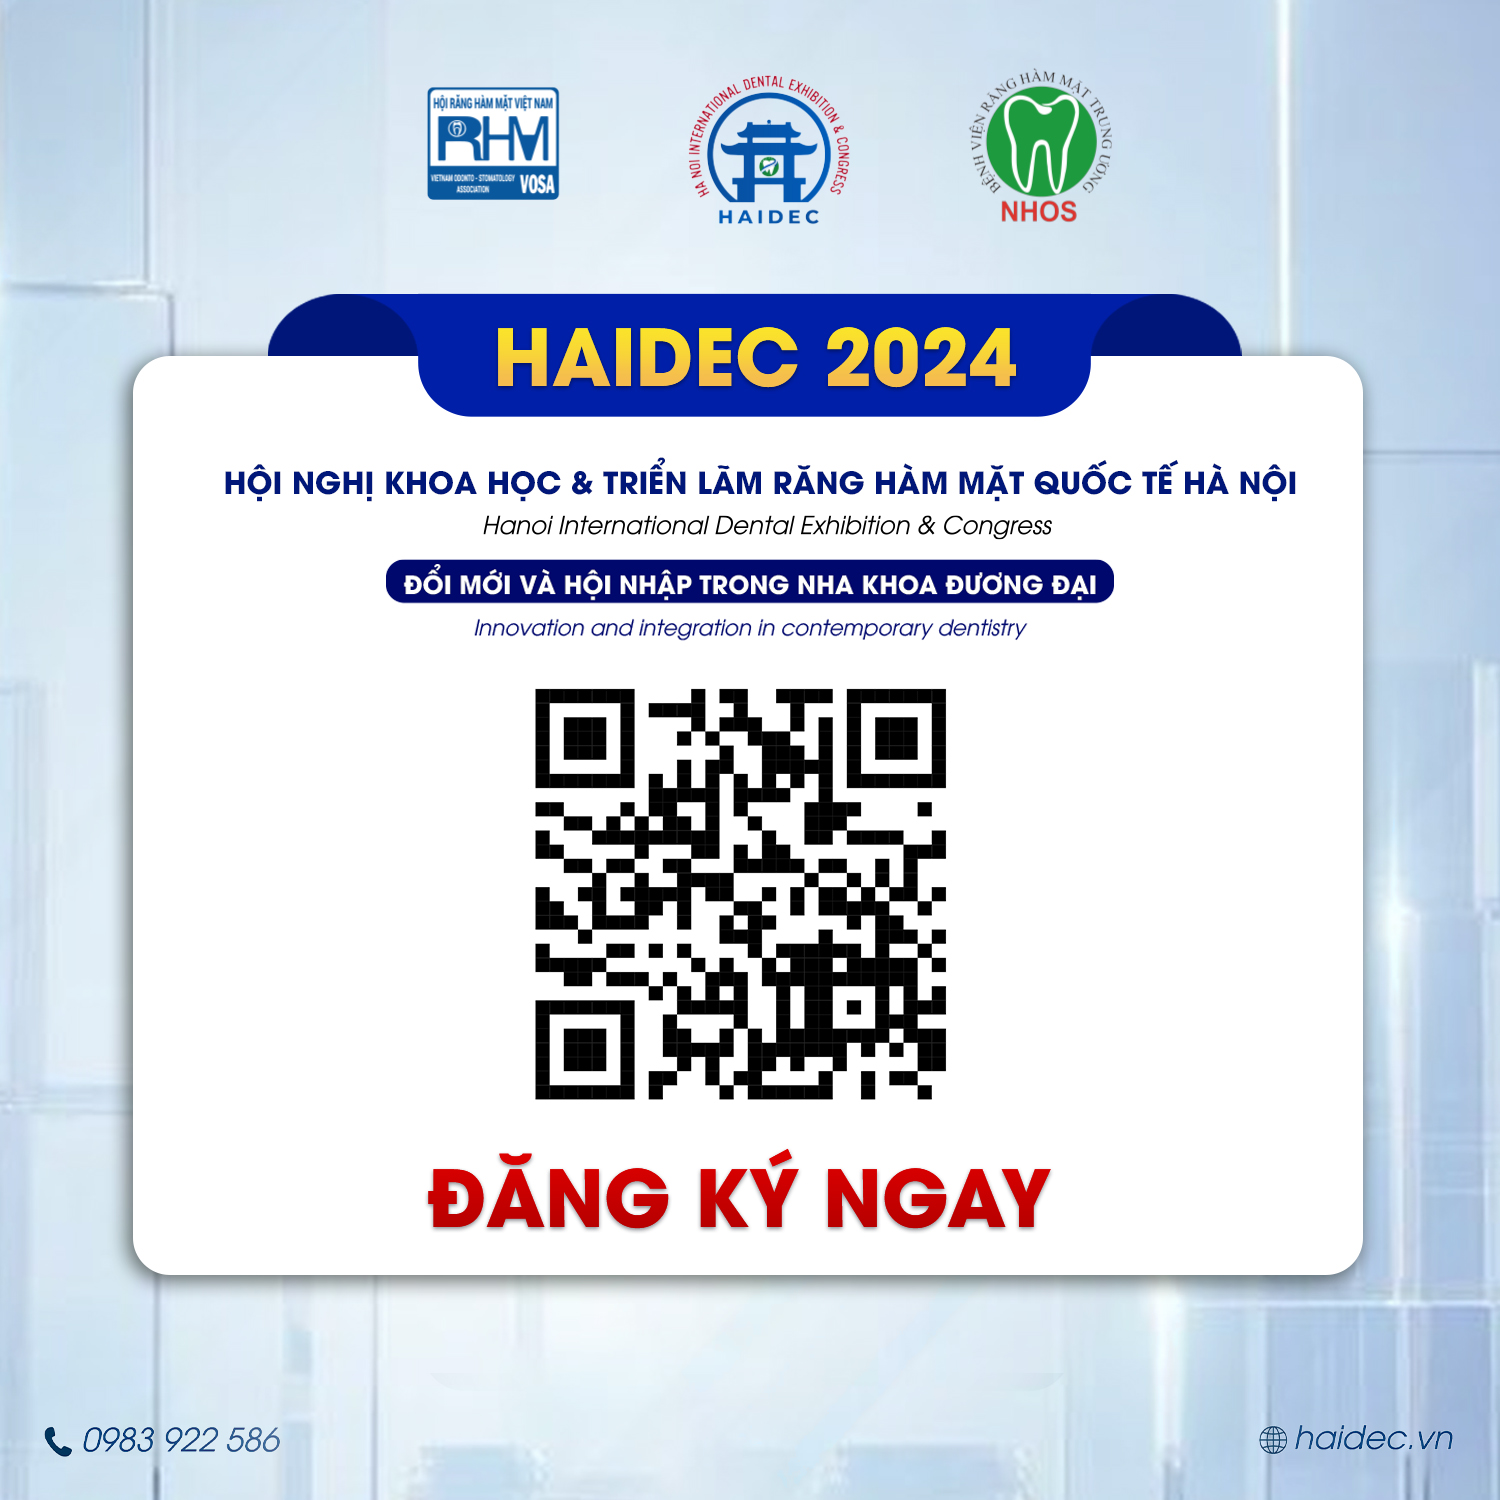 HỘI NGHỊ KHOA HỌC & TRIỂN LÃM RĂNG HÀM MẶT QUỐC TẾ HÀ NỘI - HAIDEC 2024